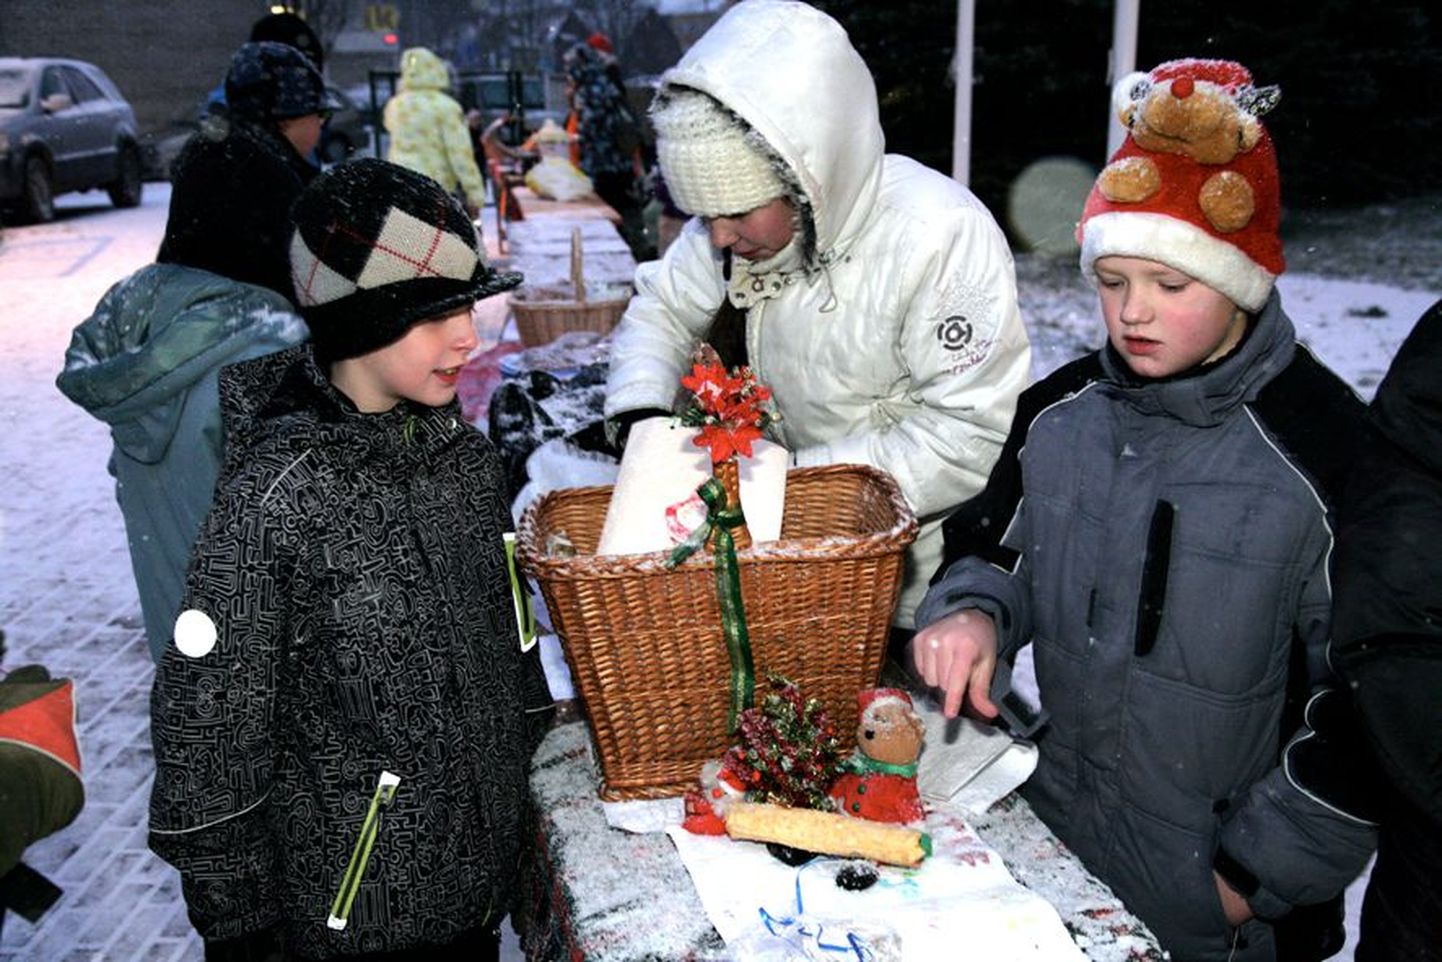 Türi põhikooli õpilane Mari Roos (keskel) pakkus Türil noortekeskuse juures toimunud Järvamaa õpilaste jõululaadal muffineid.